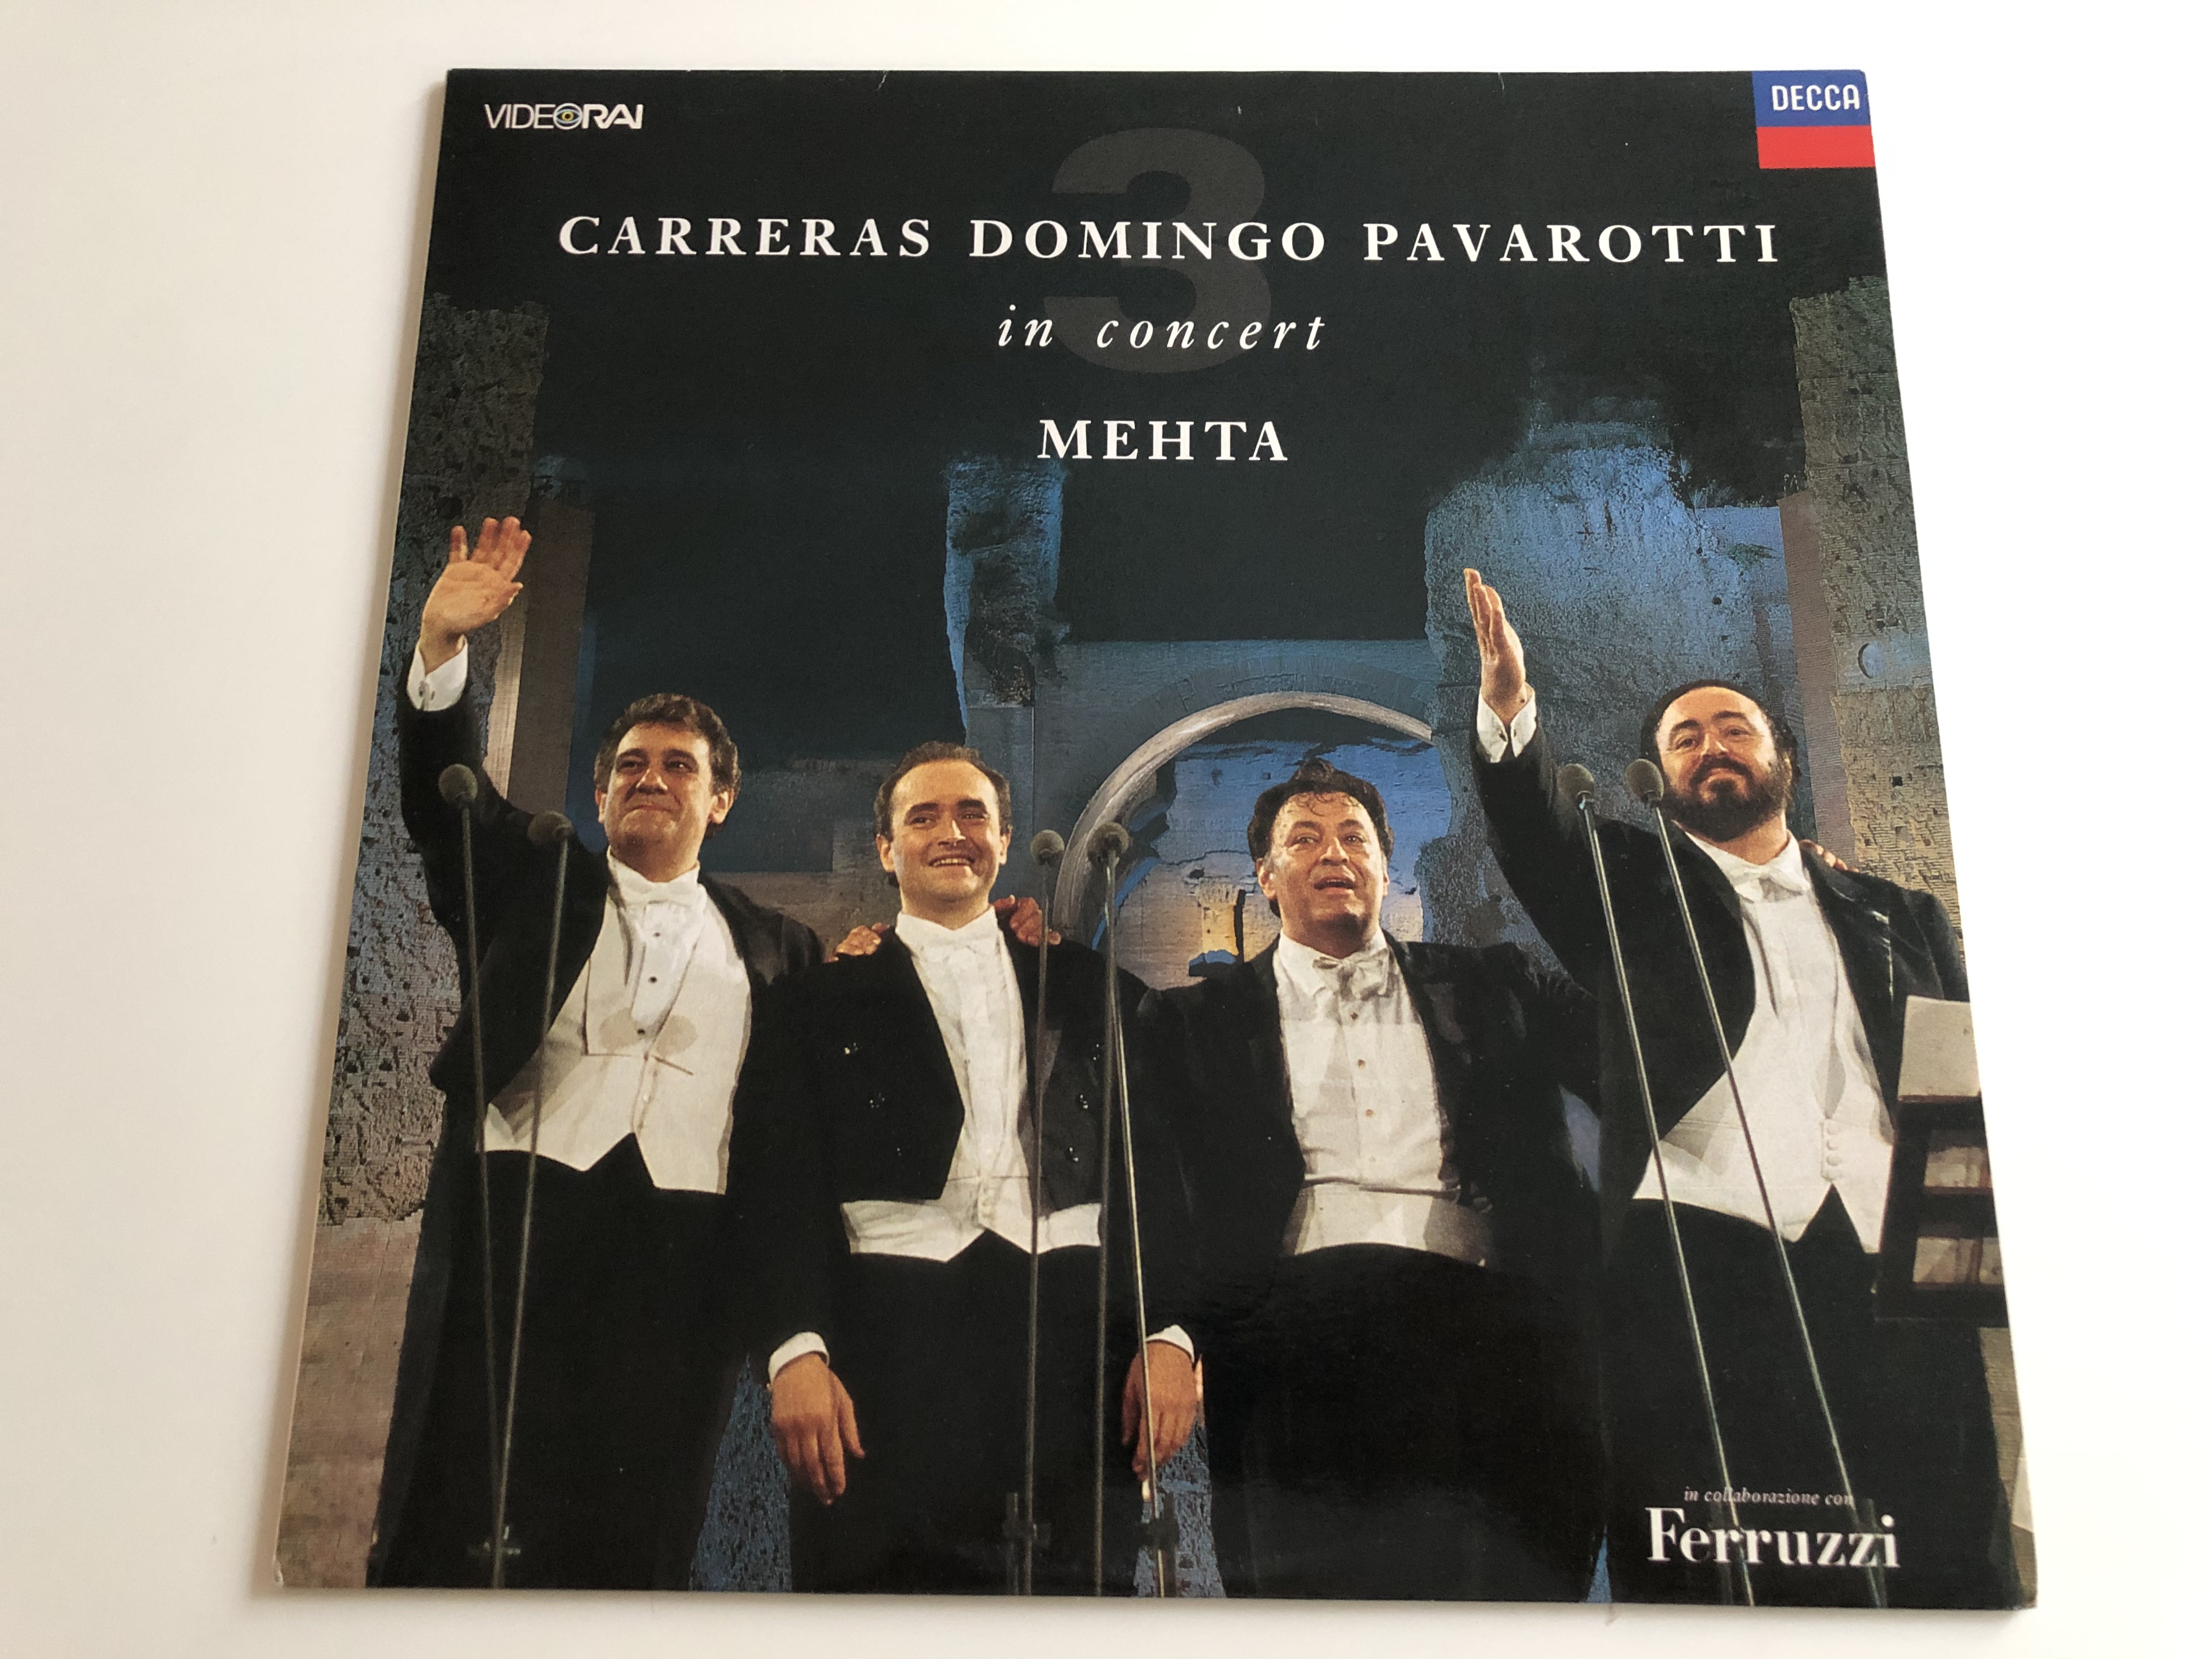 carreras-domingo-pavarotti-in-concert-mehta-decca-lp-430-433-1-1-.jpg